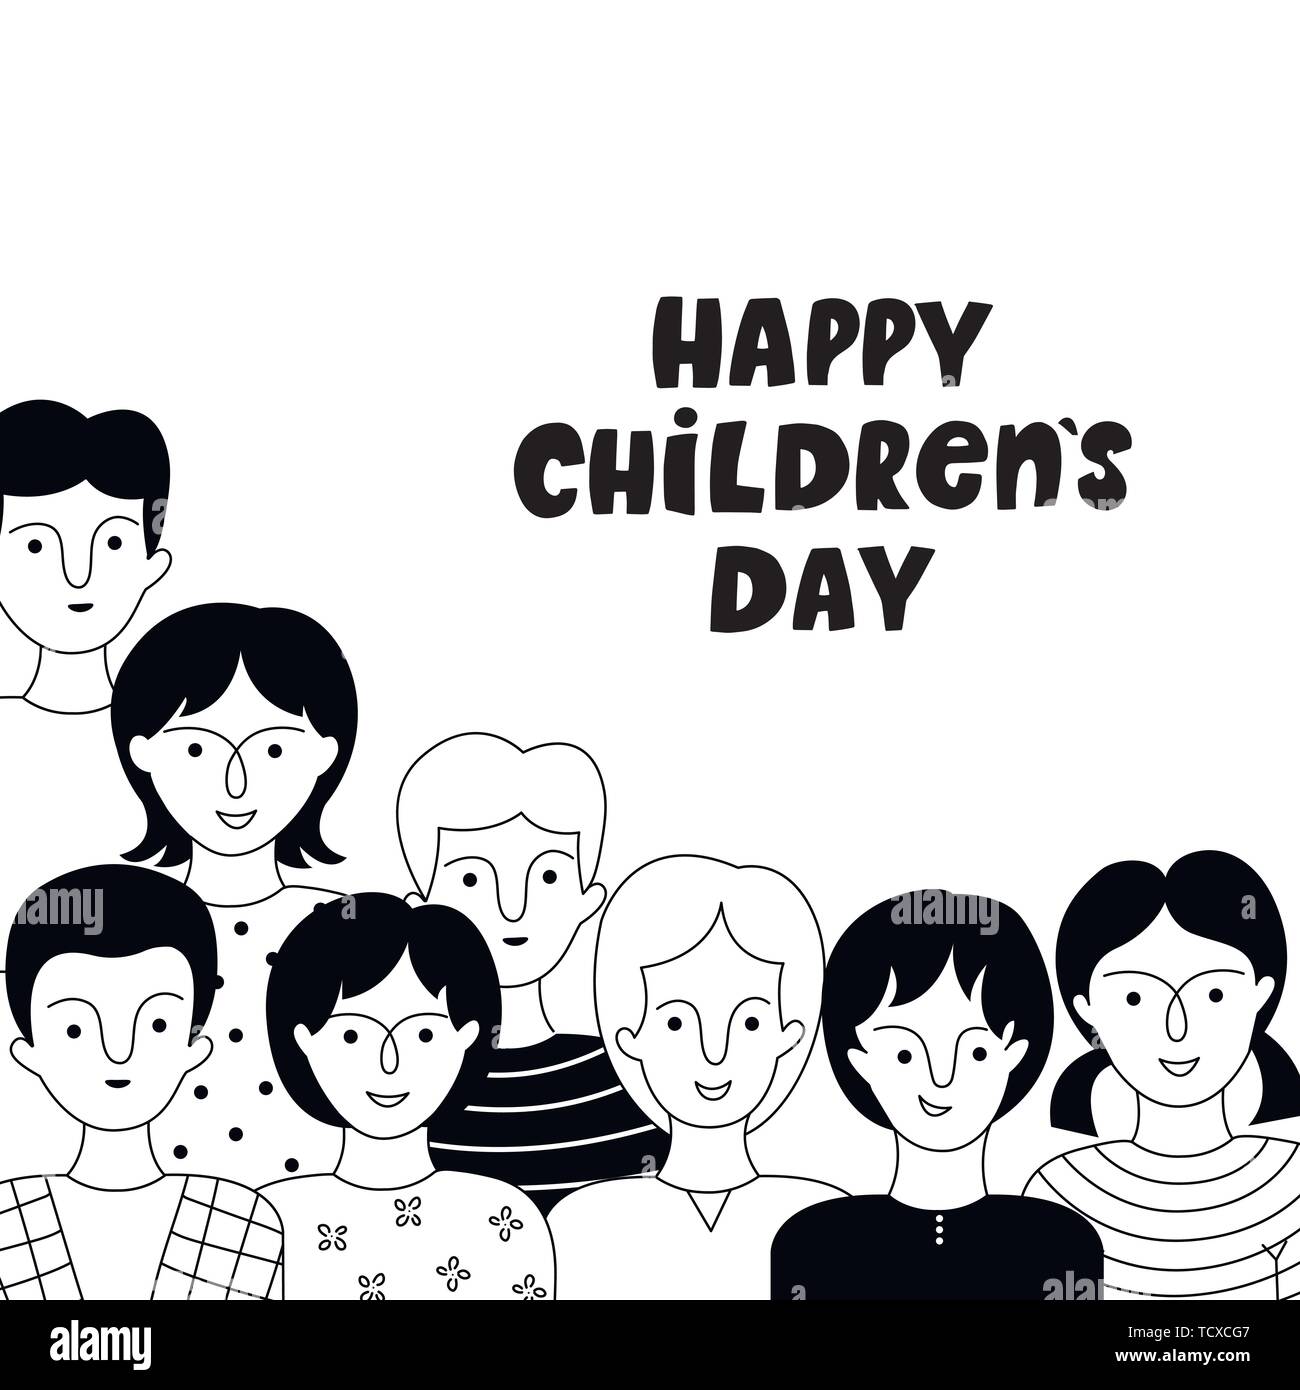 Happy Children's Day Poster mit Jungen und Mädchen. Vektor handgezeichnete Illustrationen. Doodle Stil. Stock Vektor